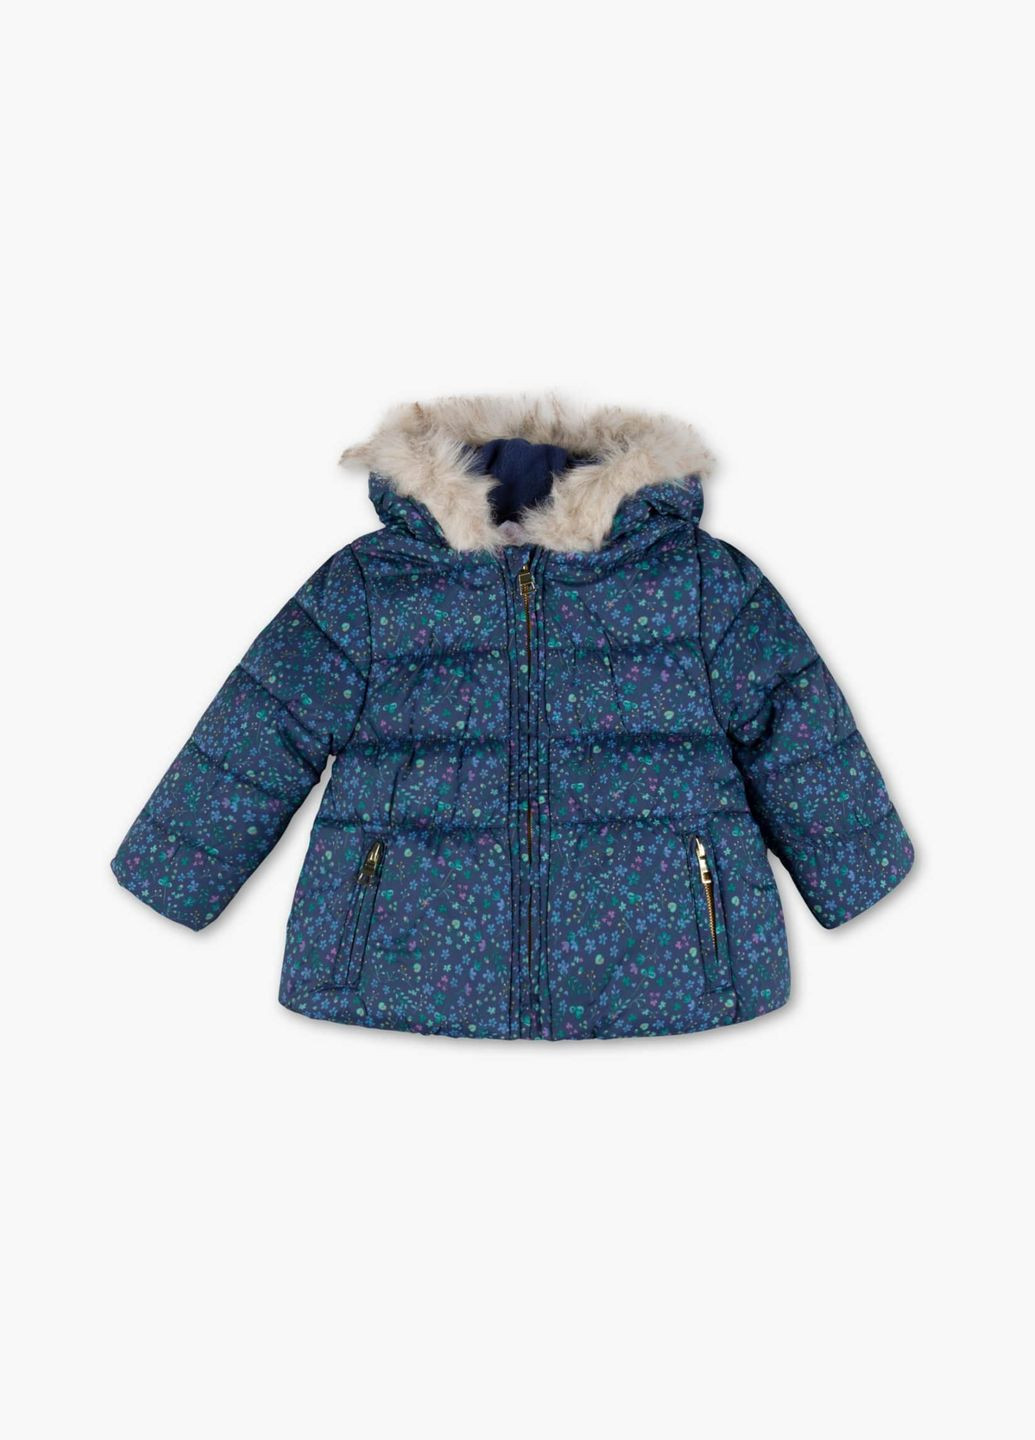 Синяя детская куртка для девочки 92 размер синяя 1047415 C&A